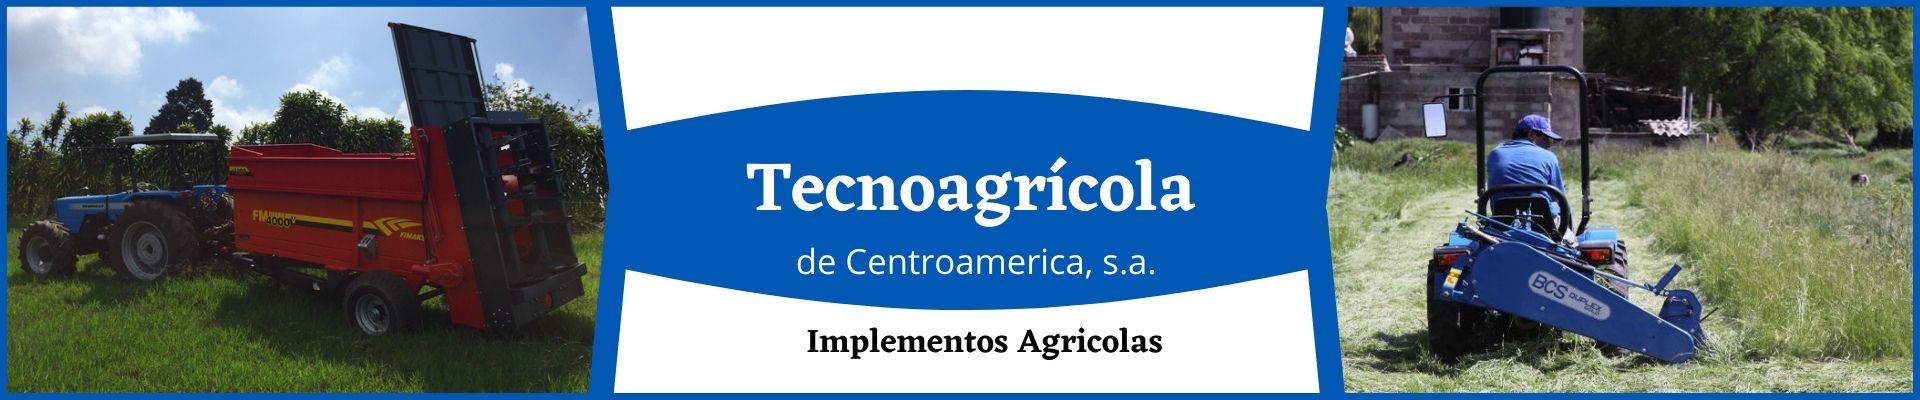 Banner Tecnoagrícola